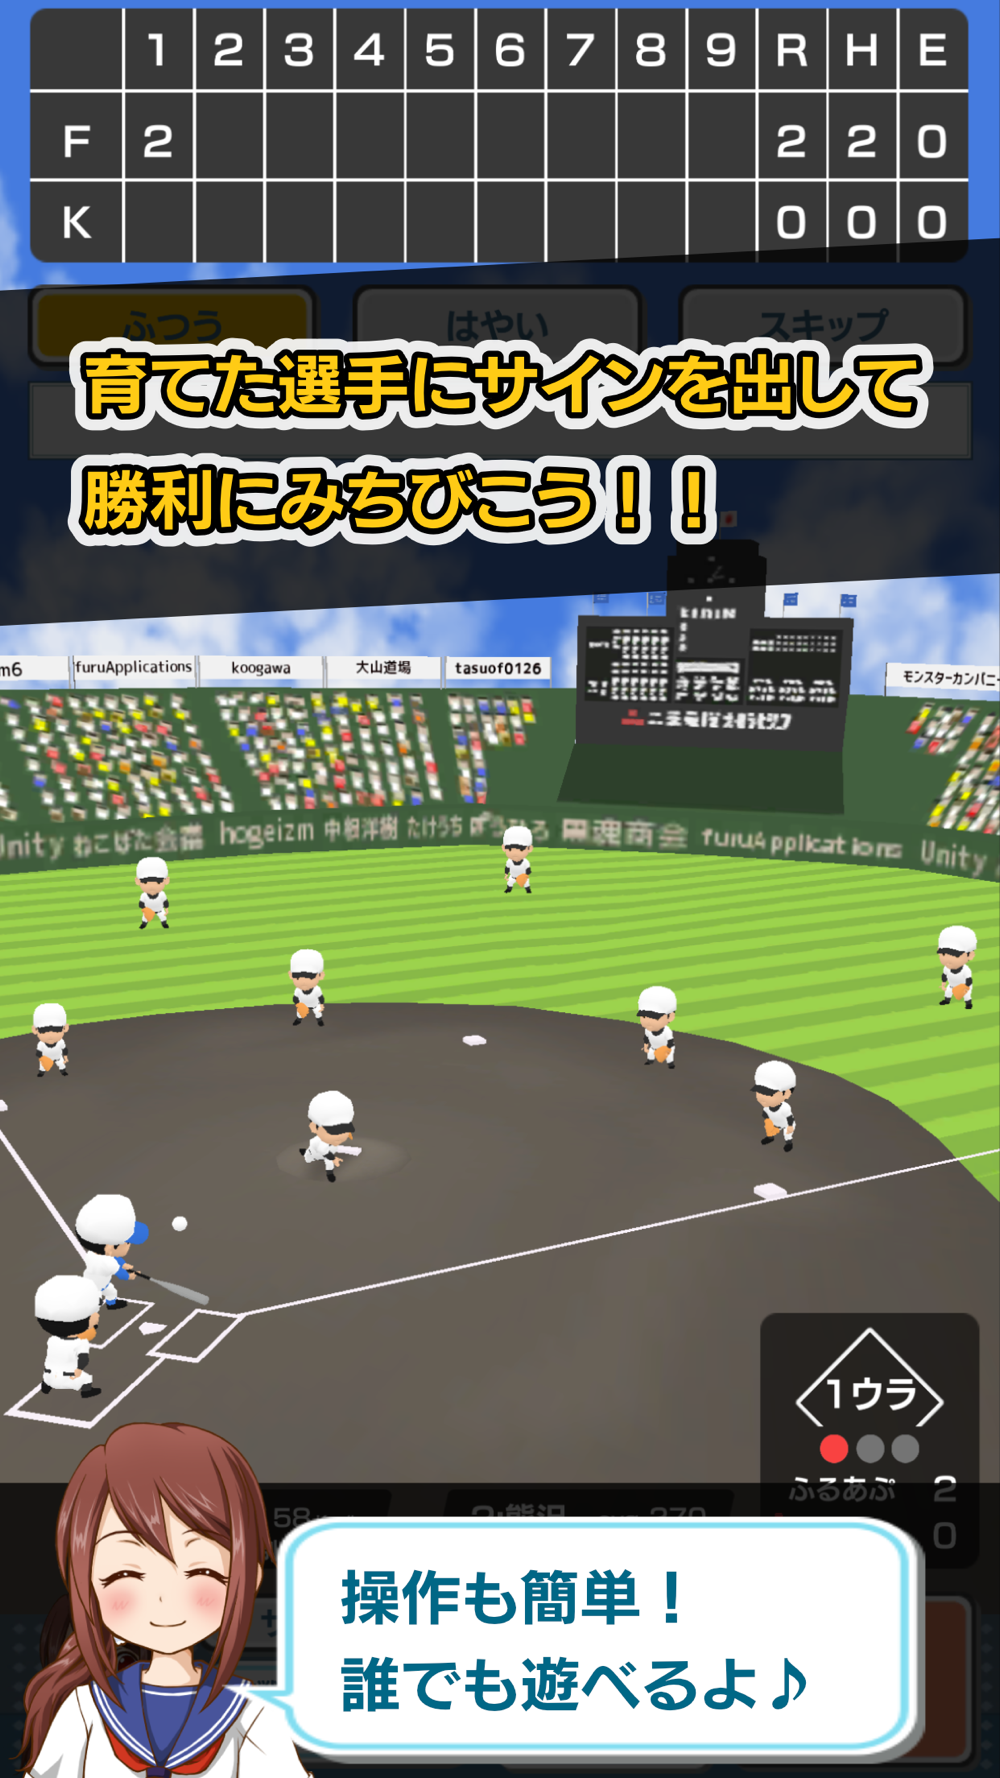 私を甲子園に連れてって 野球シミュレーションゲーム Free Download App For Iphone Steprimo Com